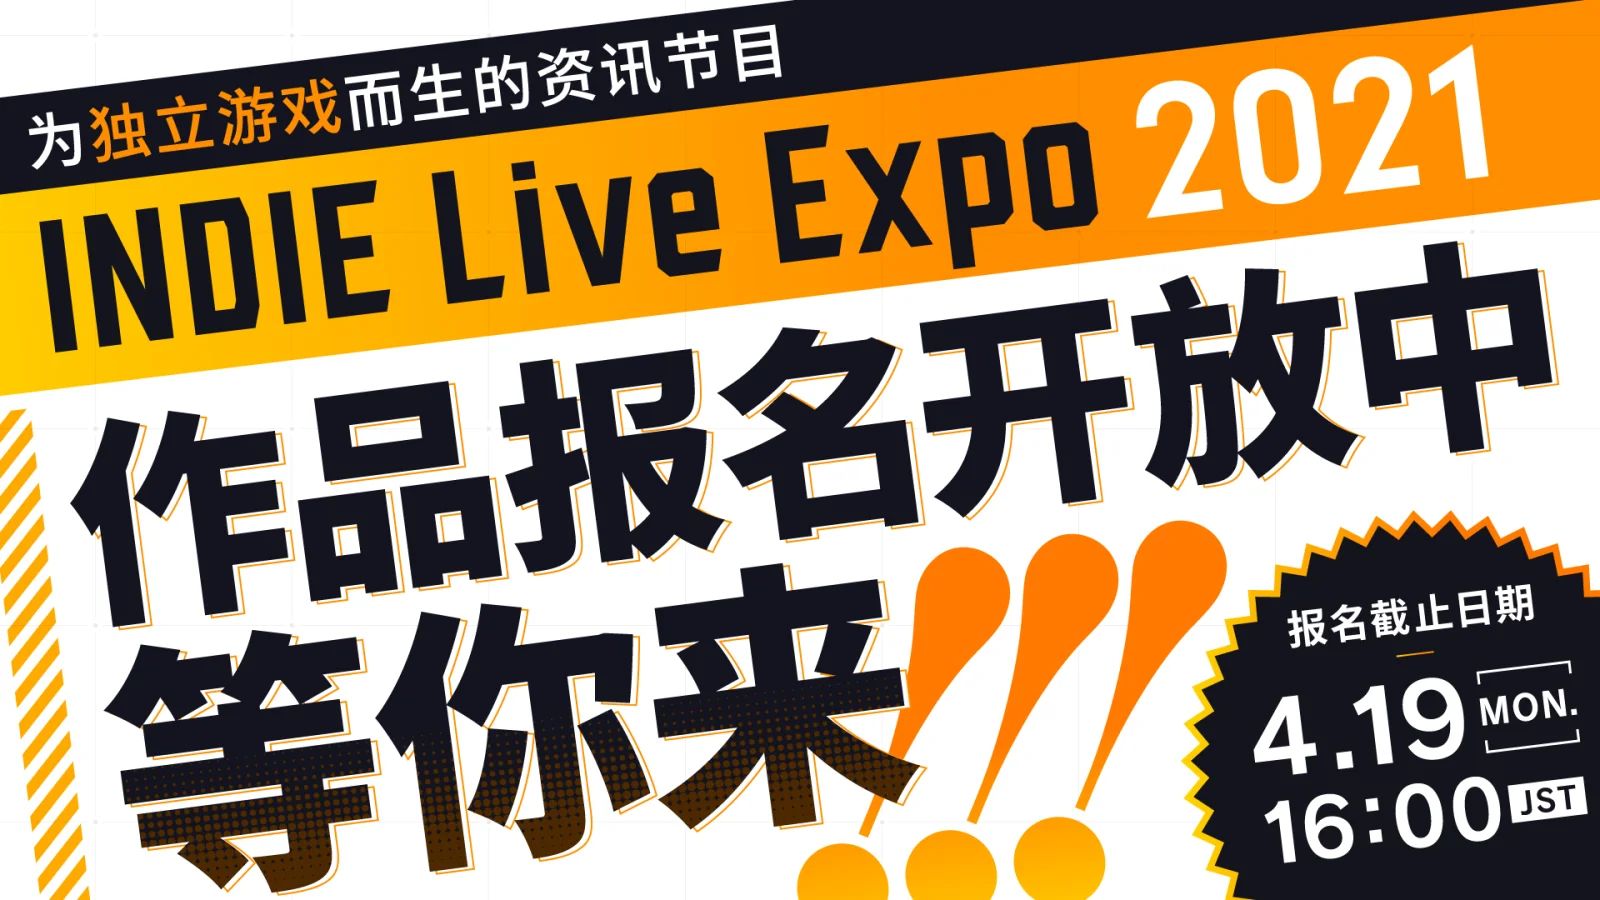 独立游戏展INDIE Live Expo 2021预计在6月5日举办